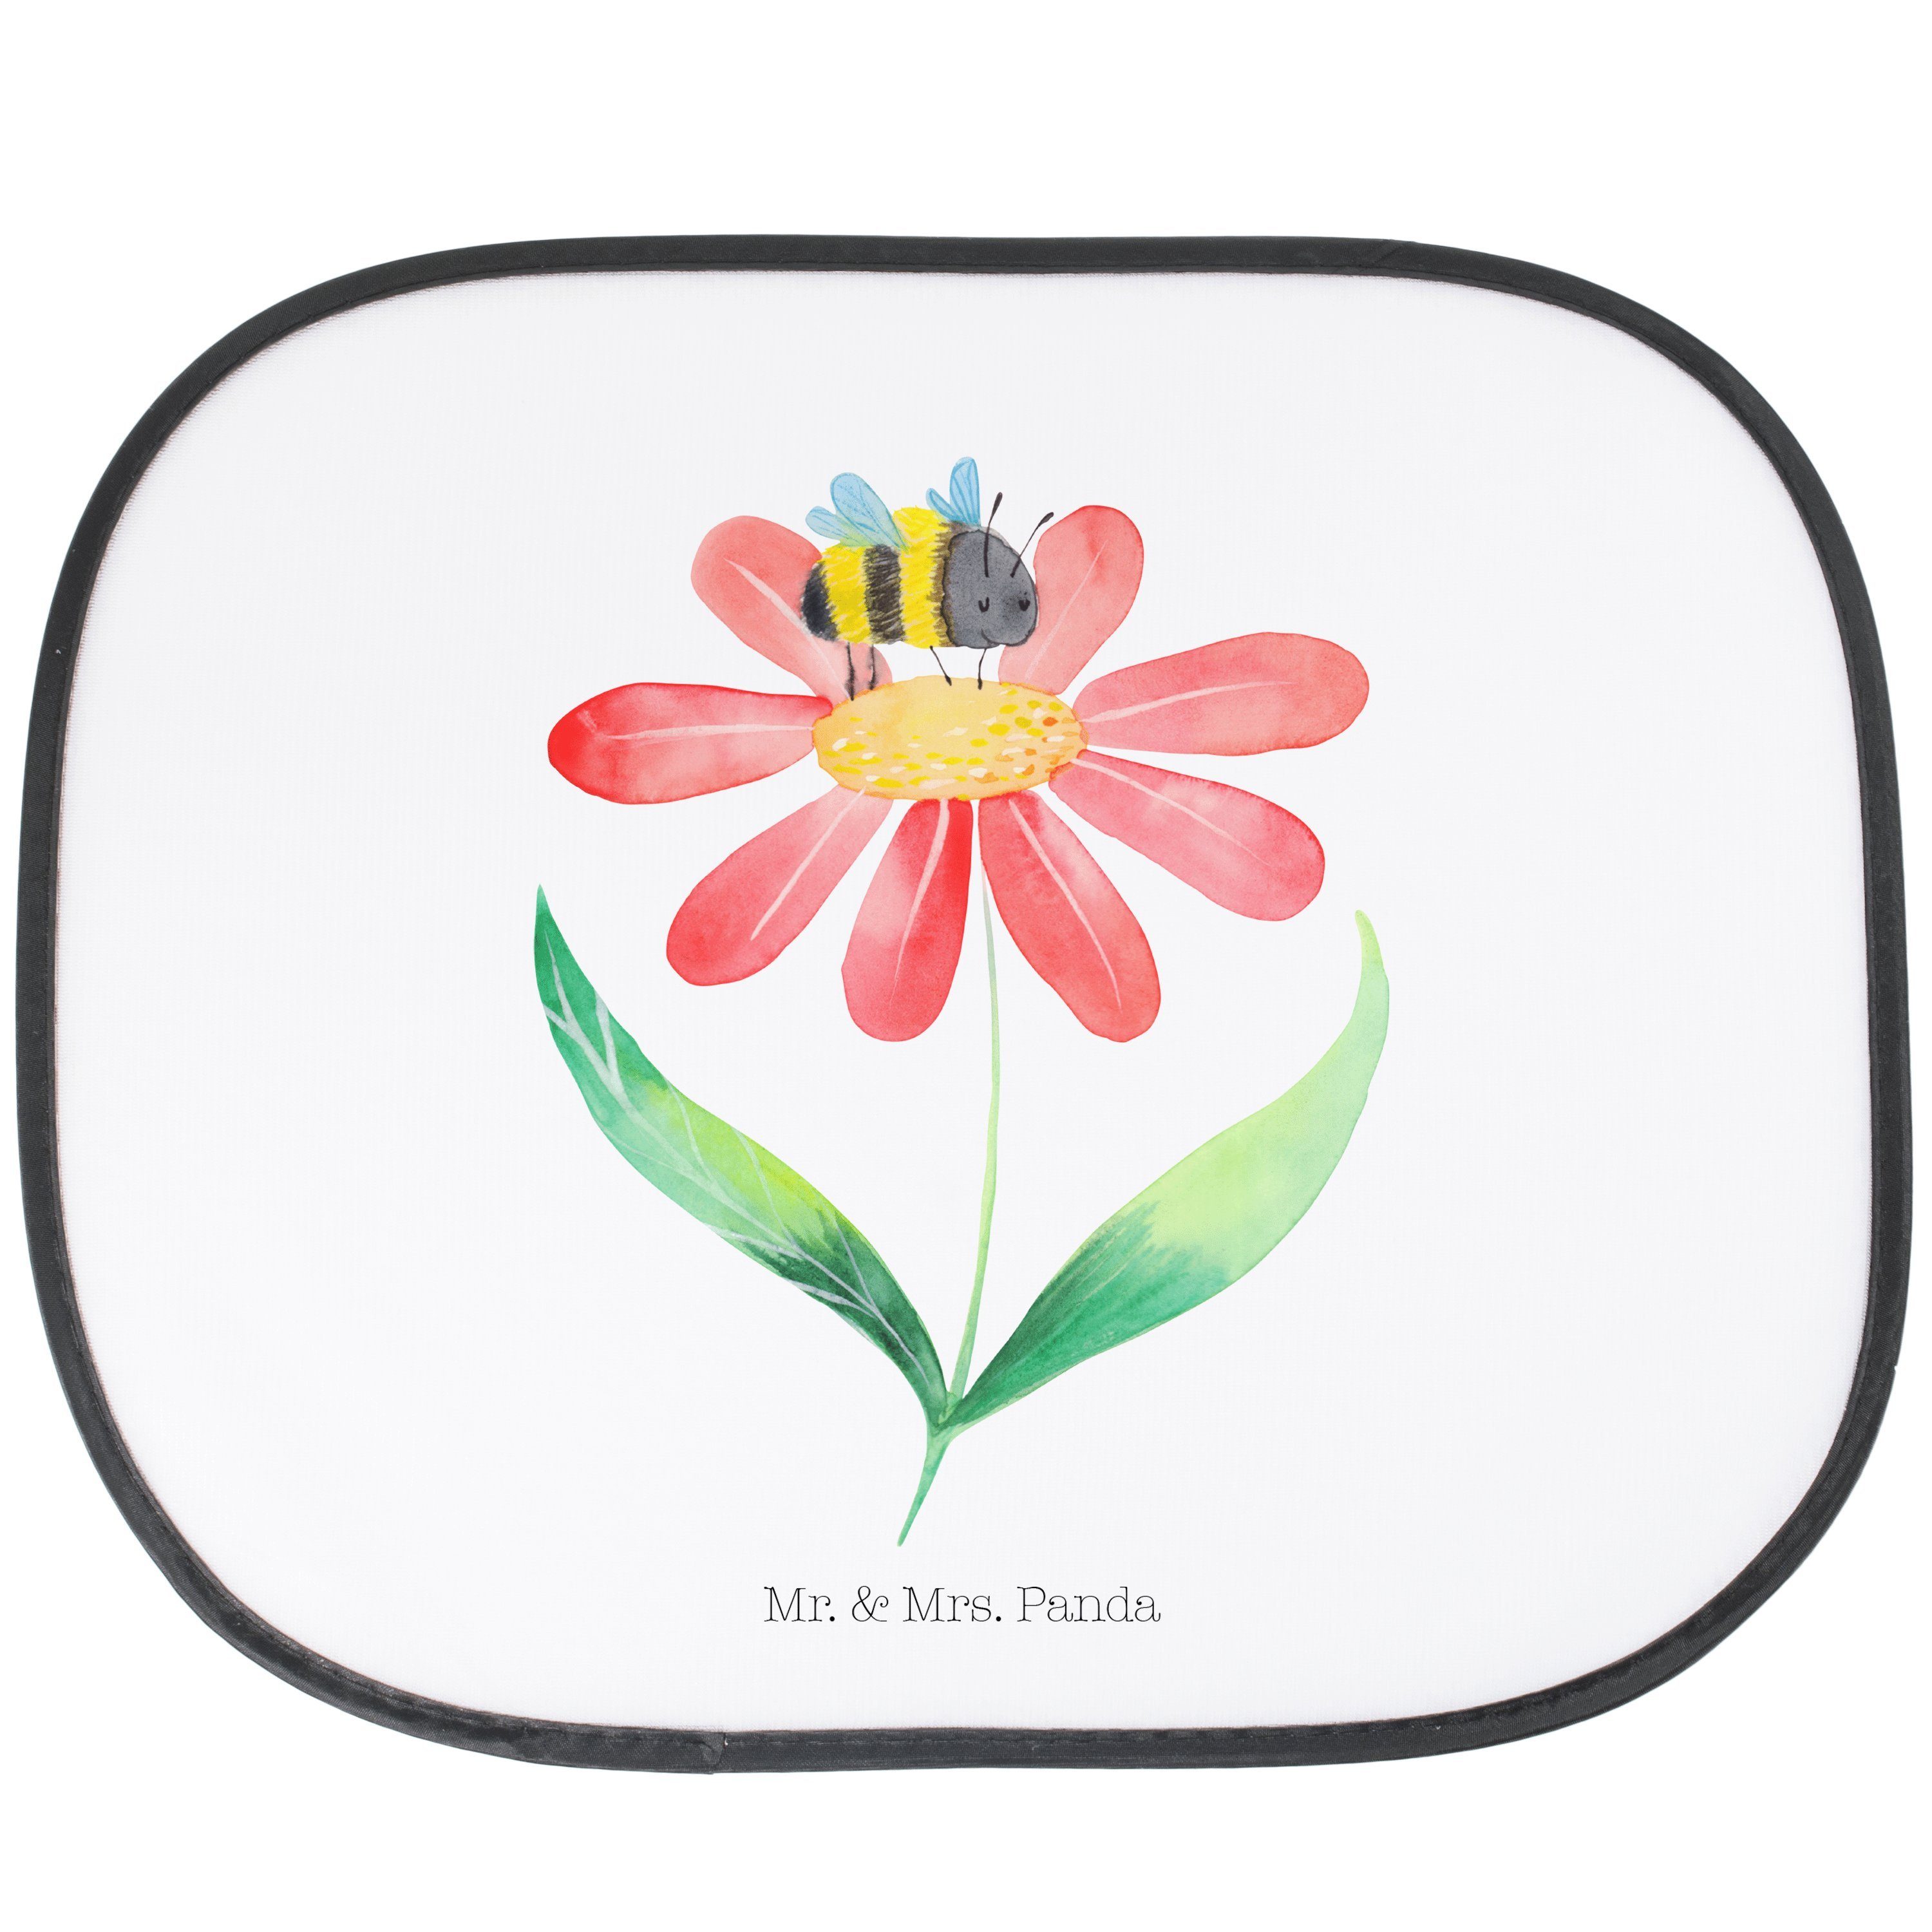 Sonnenschutz Hummel Blume - Weiß - Geschenk, lustige Sprüche, Sonnenschutz Baby, N, Mr. & Mrs. Panda, Seidenmatt